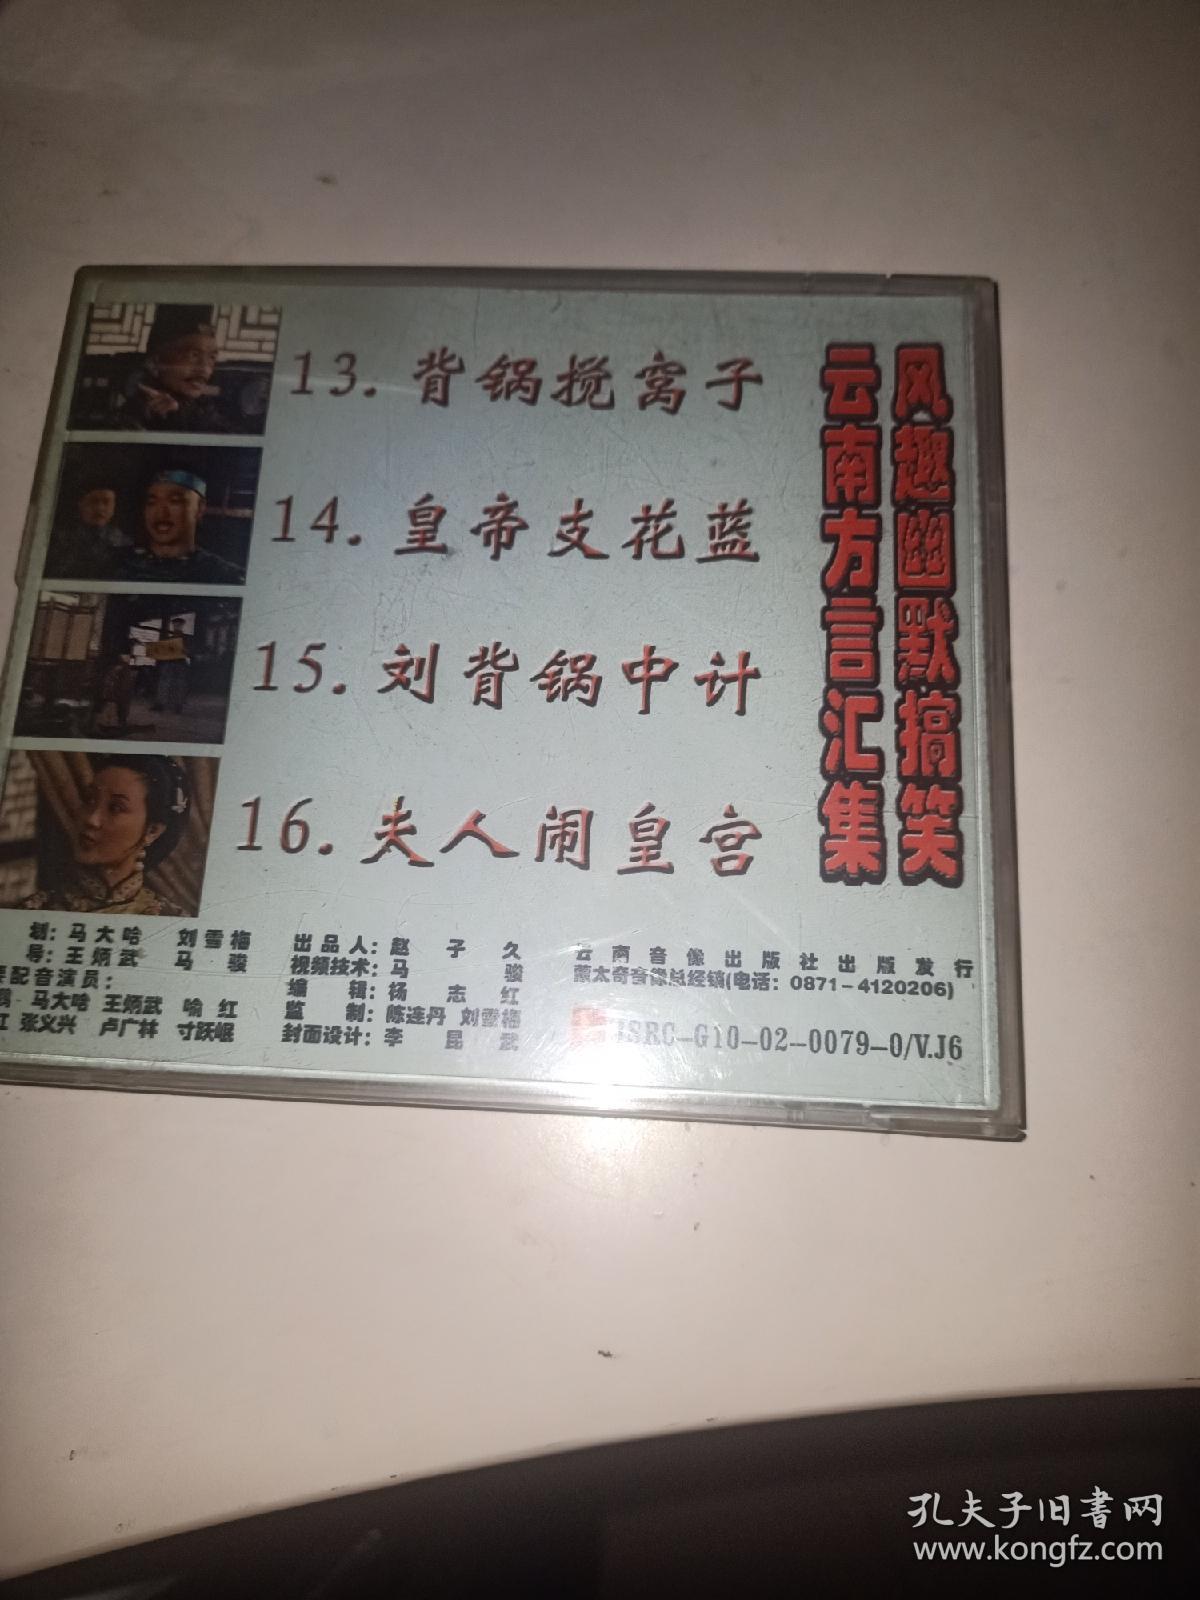 开心蒙太奇之宰相刘罗锅VCD单碟装第四集